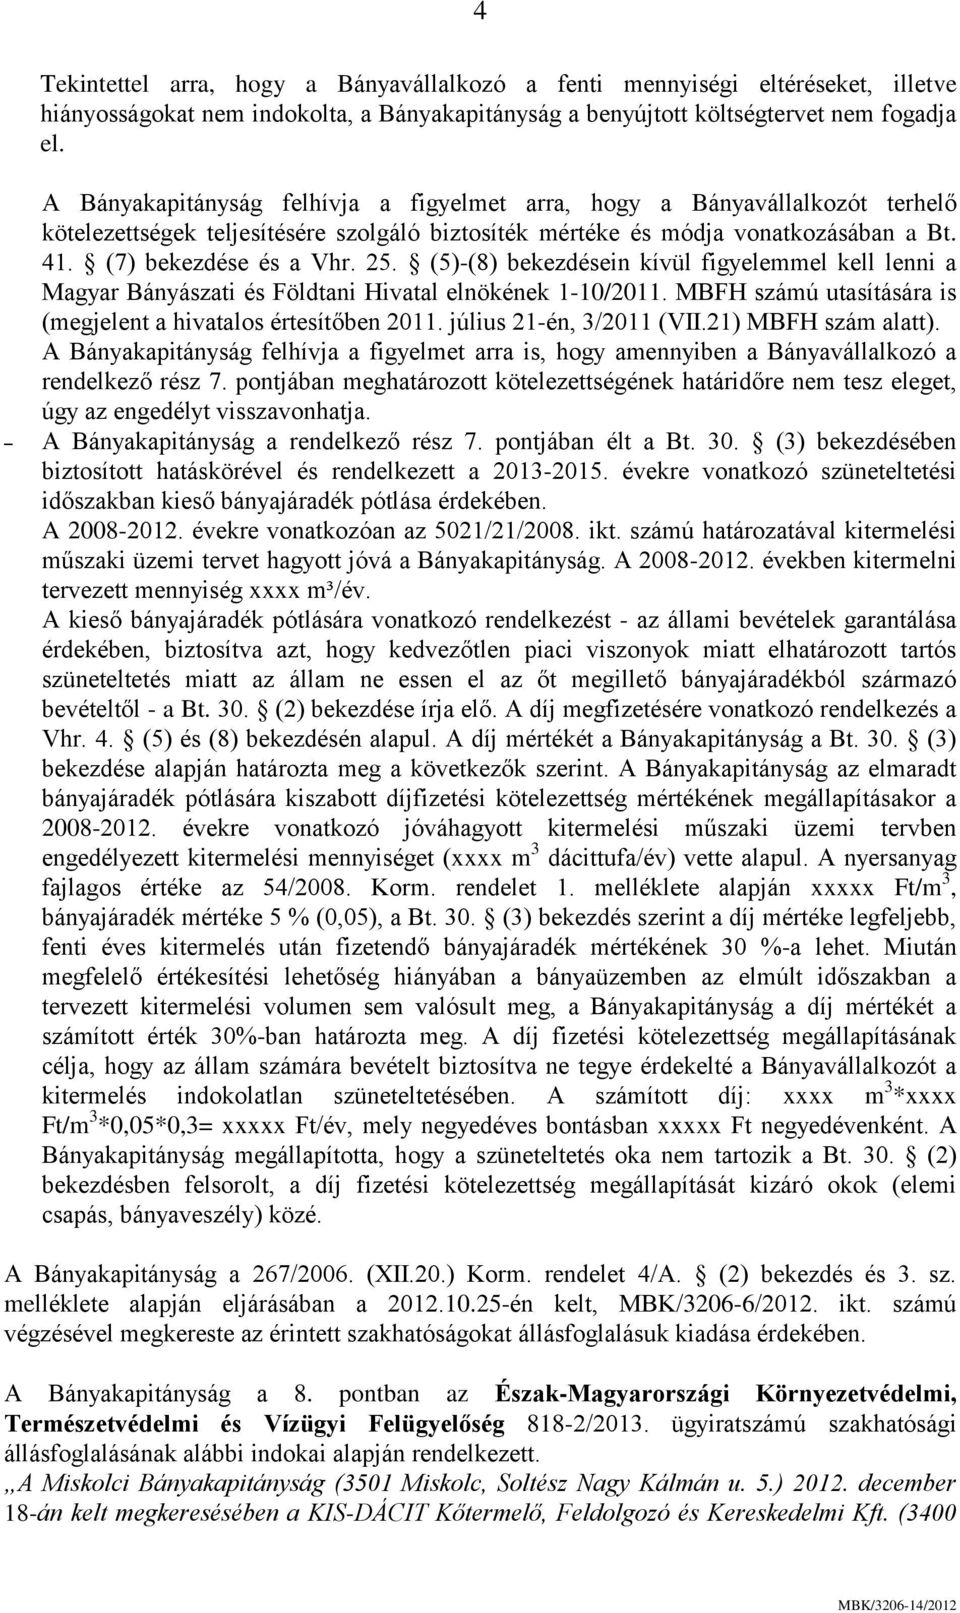 (5)-(8) bekezdésein kívül figyelemmel kell lenni a Magyar Bányászati és Földtani Hivatal elnökének 1-10/2011. MBFH számú utasítására is (megjelent a hivatalos értesítőben 2011.